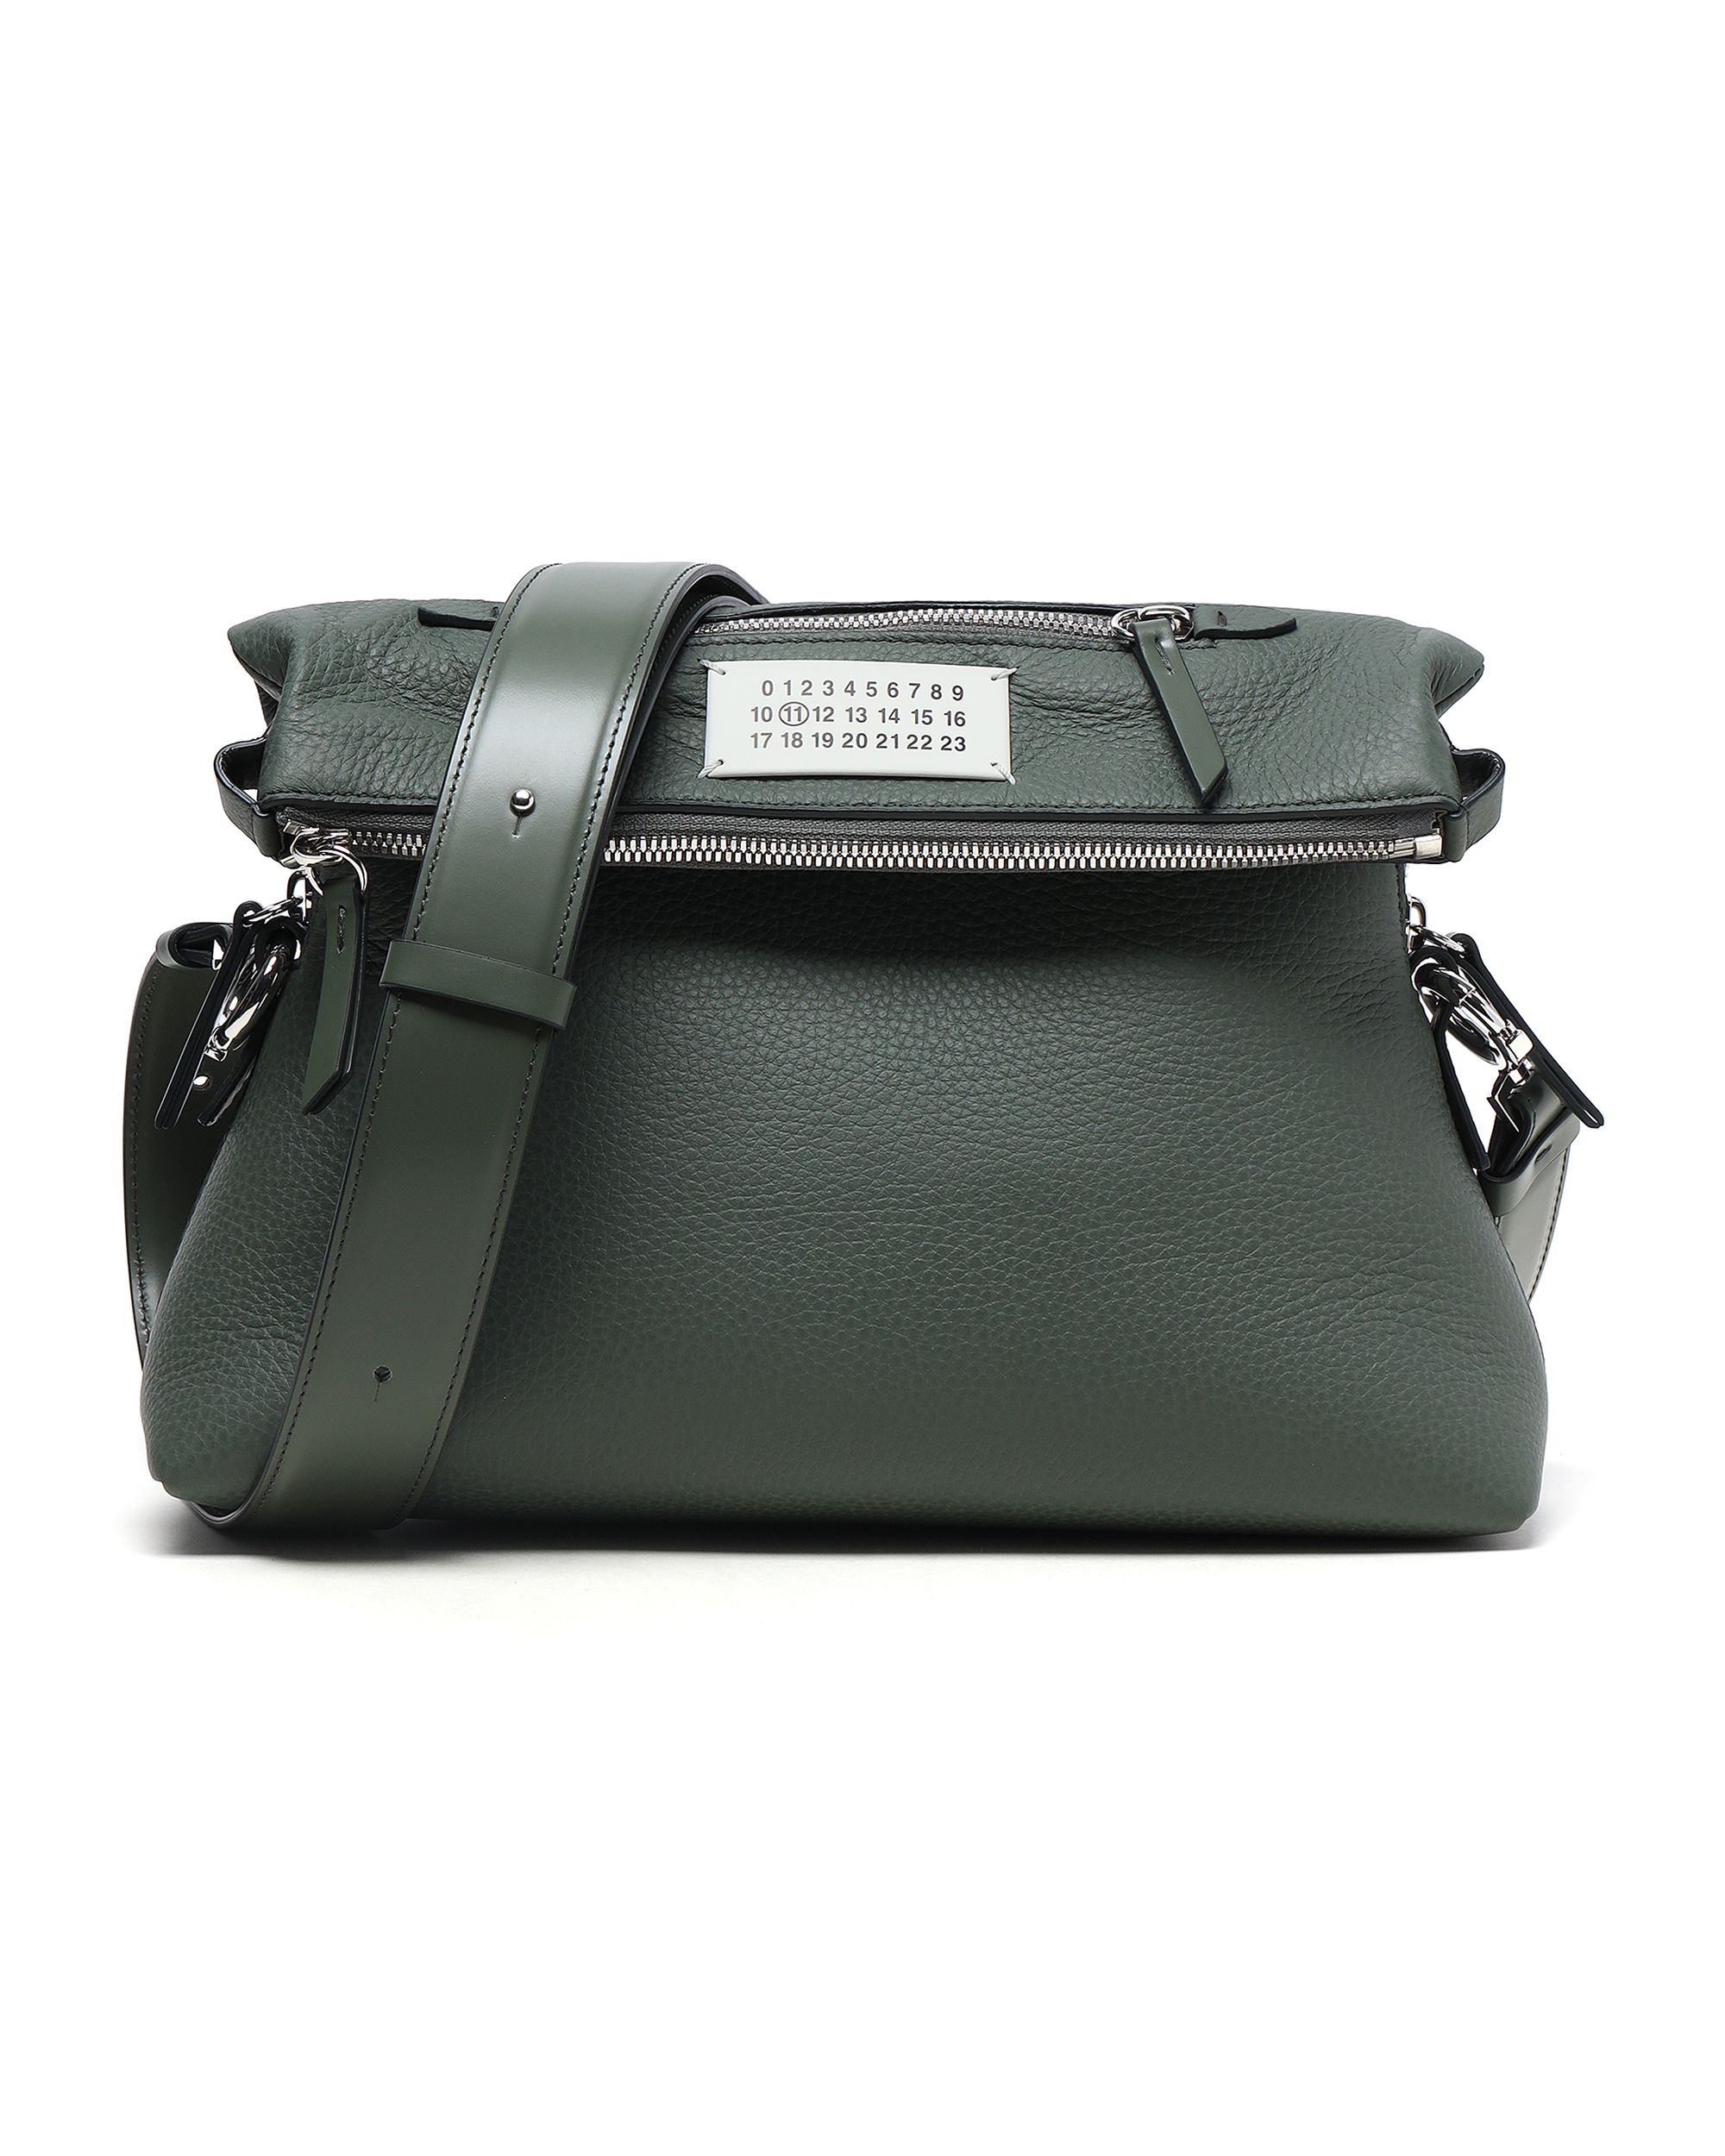 MAISON MARGIELA Soft 5AC multifunction leather bag | ITeSHOP